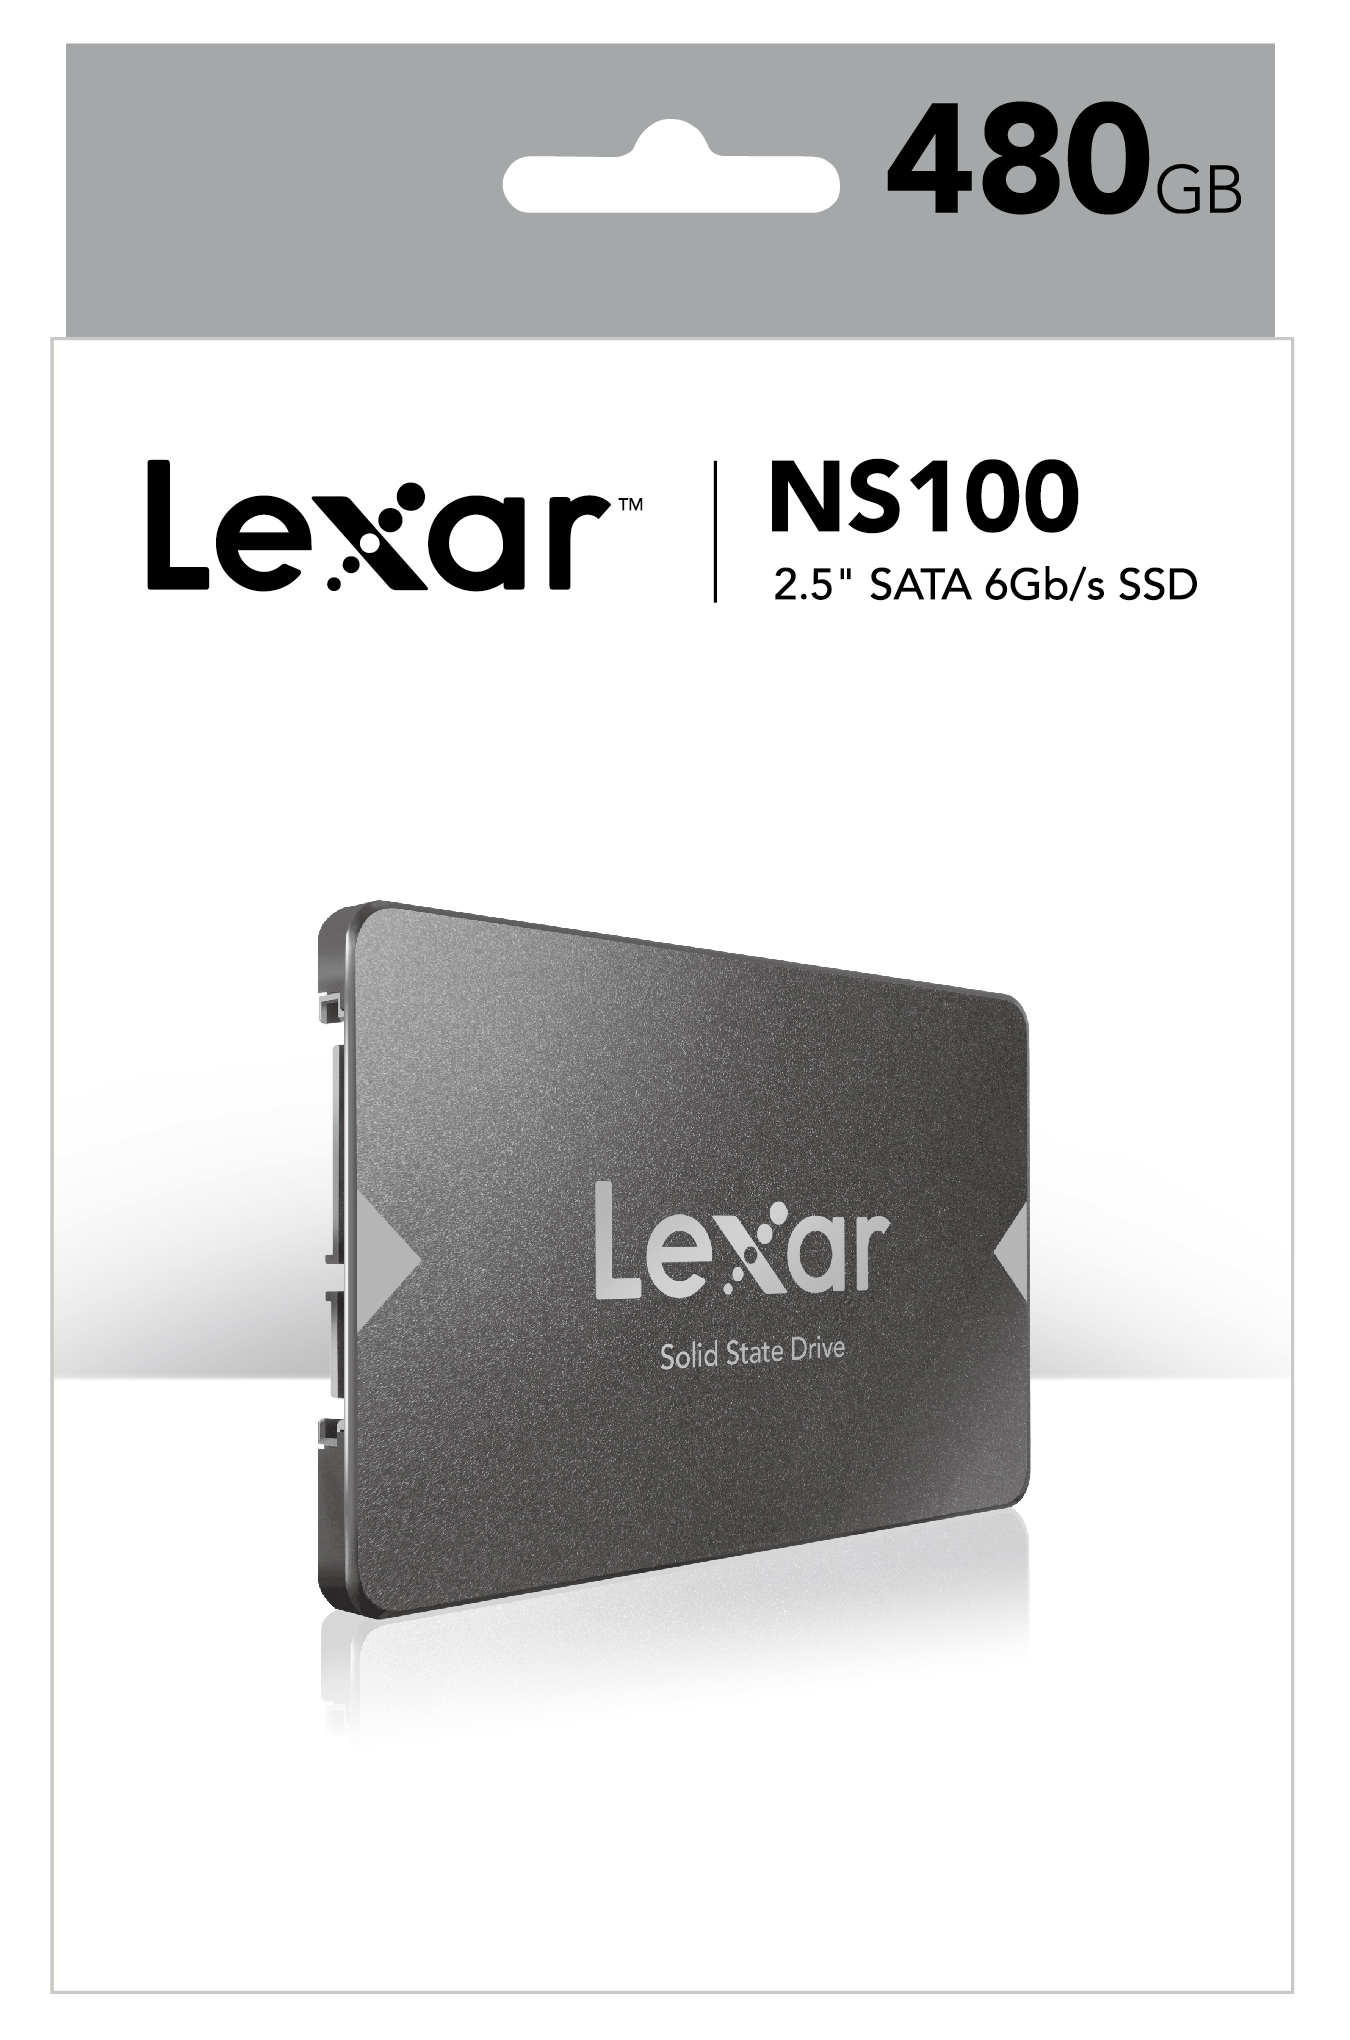 Ổ cứng SSD 480GB Lexar NS100 2.5-Inch SATA III_Hàng chính hãng